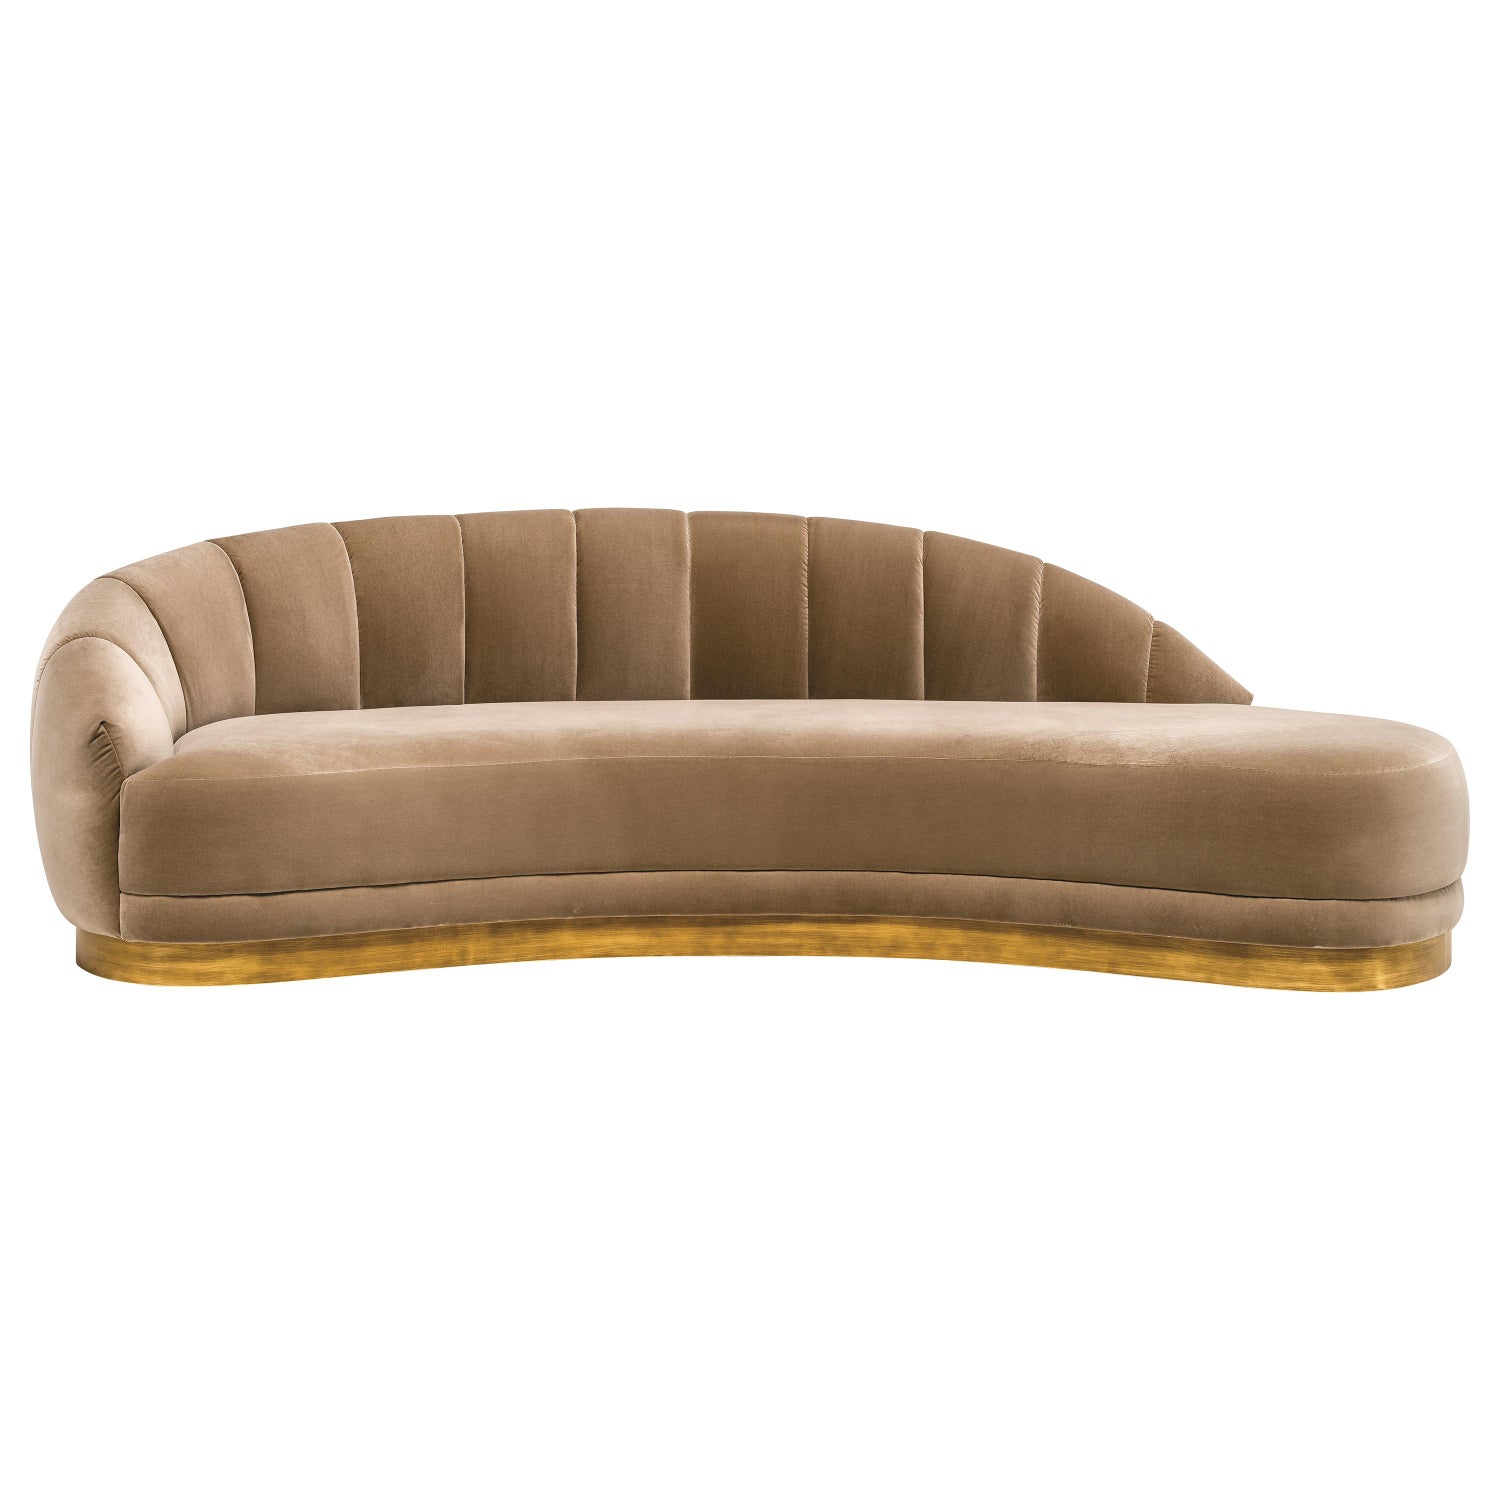 https://a.1stdibscdn.com/hand-tailored-retro-style-sofa-channel-tufted-velvet-for-sale/1121189/f_234113321618656487327/23411332_master.jpg?width=1500